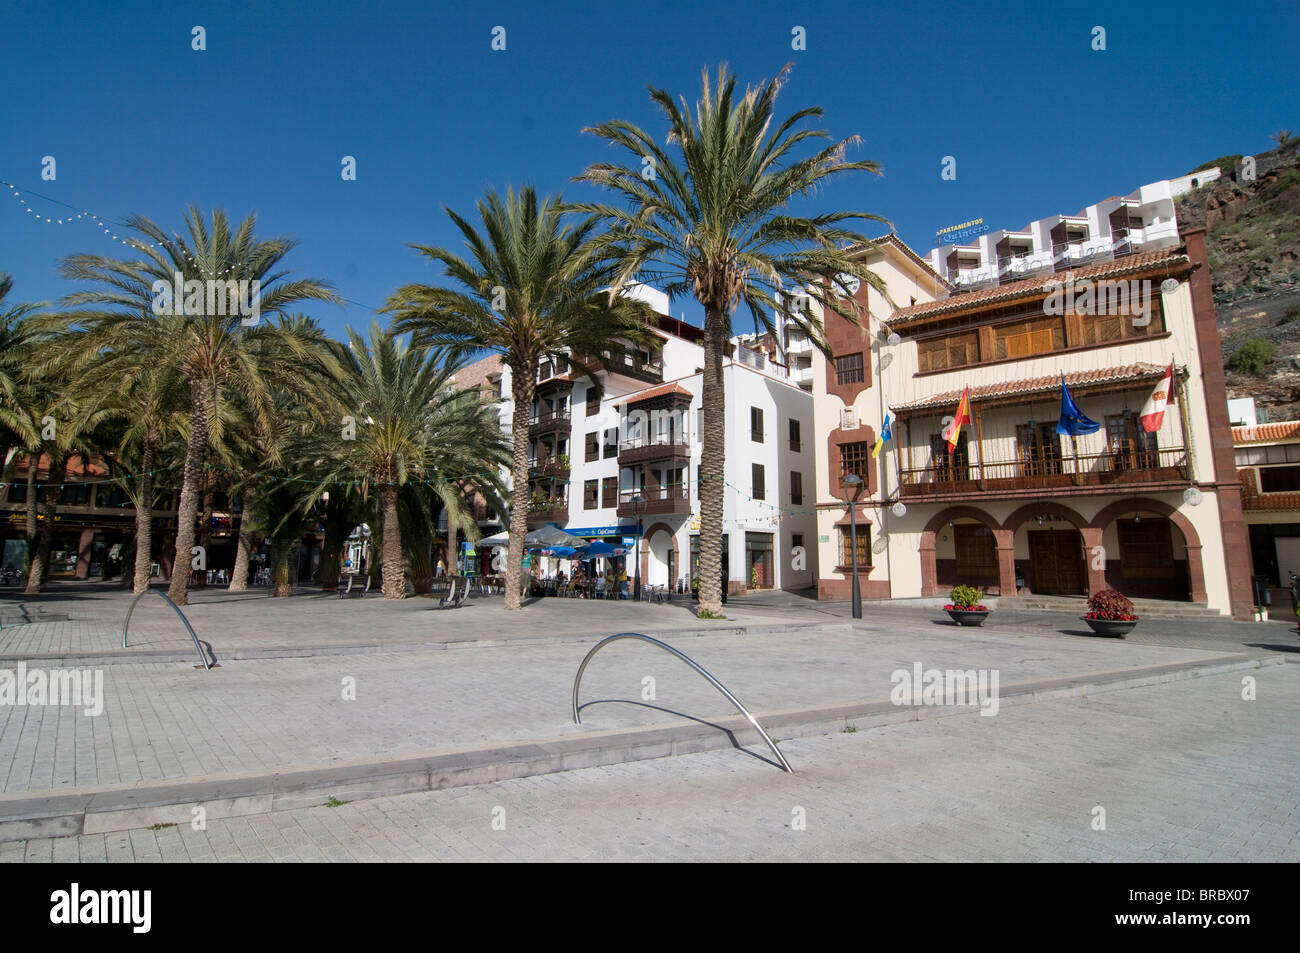 Wenig Platz vor Kolonialbauten, San Sebastian De La Gomera, La Gomera, Kanarische Inseln, Spanien Stockfoto